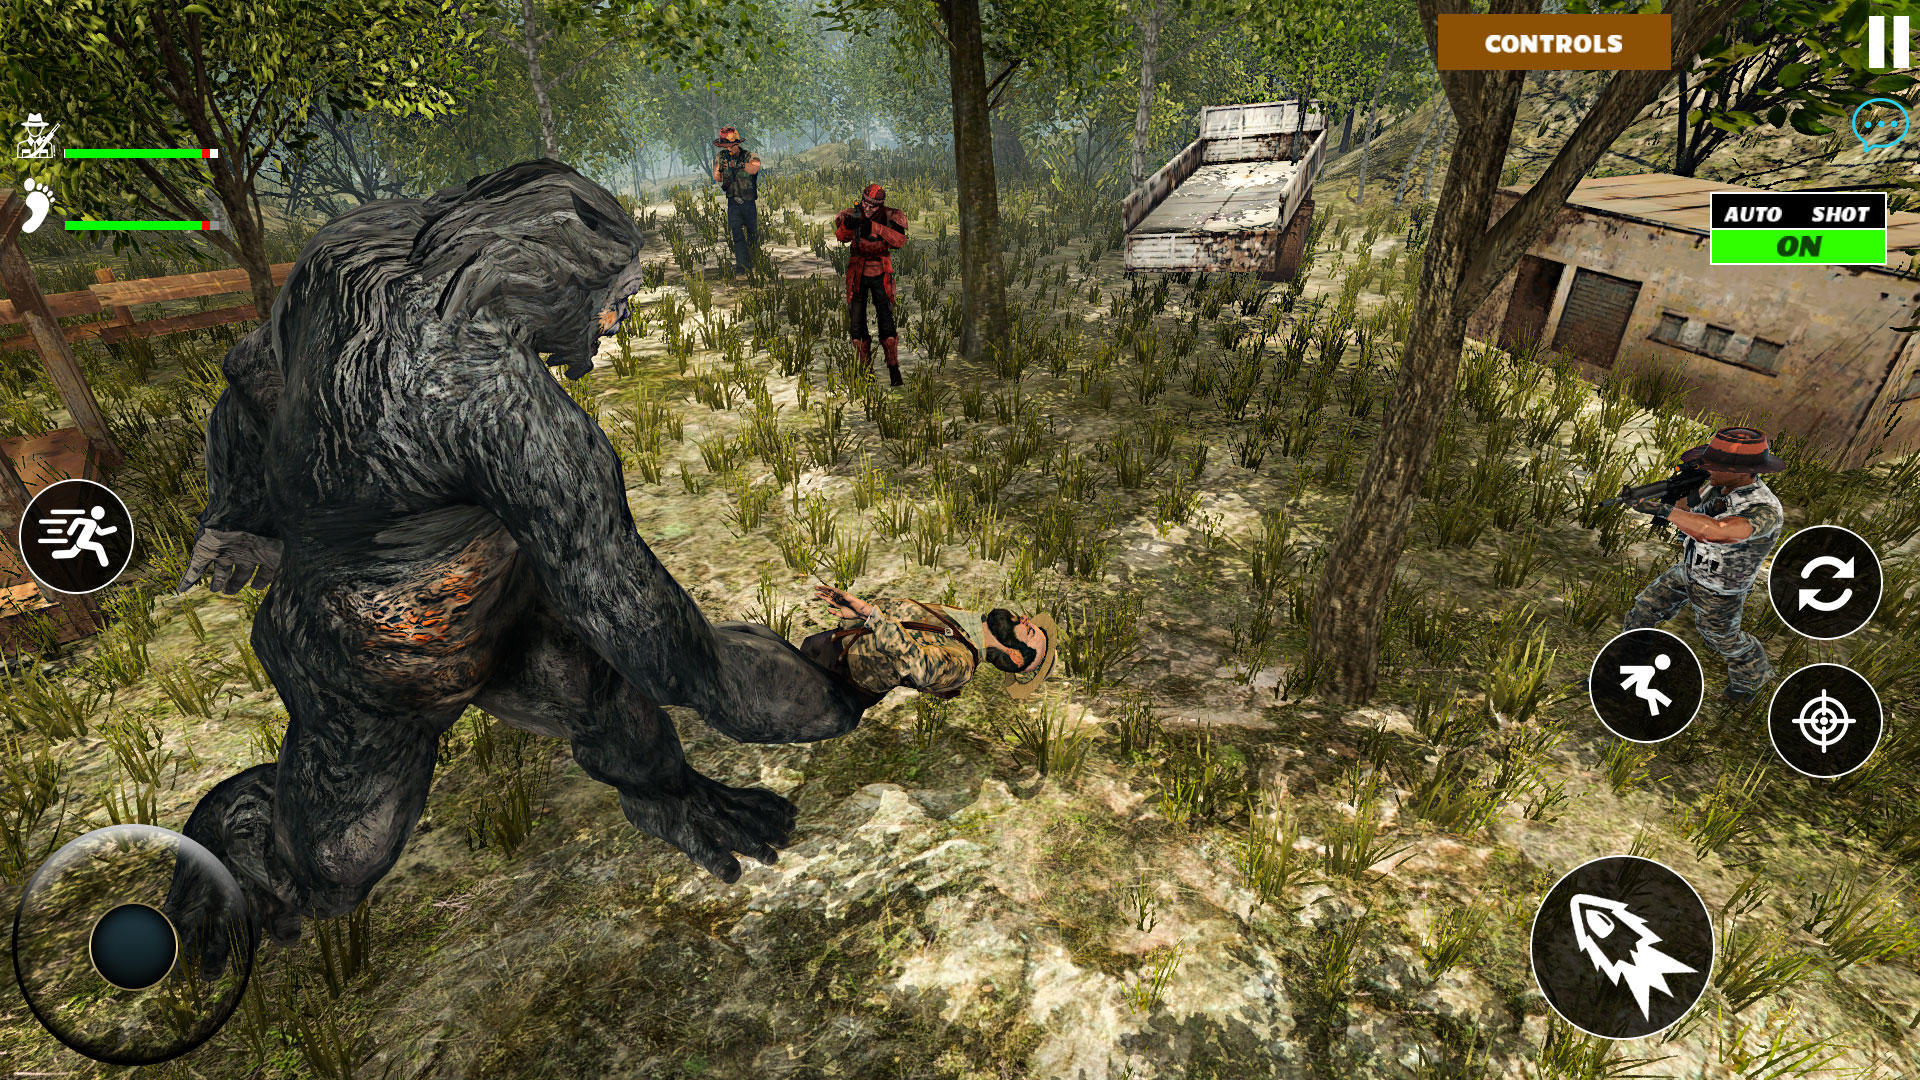 Screenshot of Bigfoot 2 Online